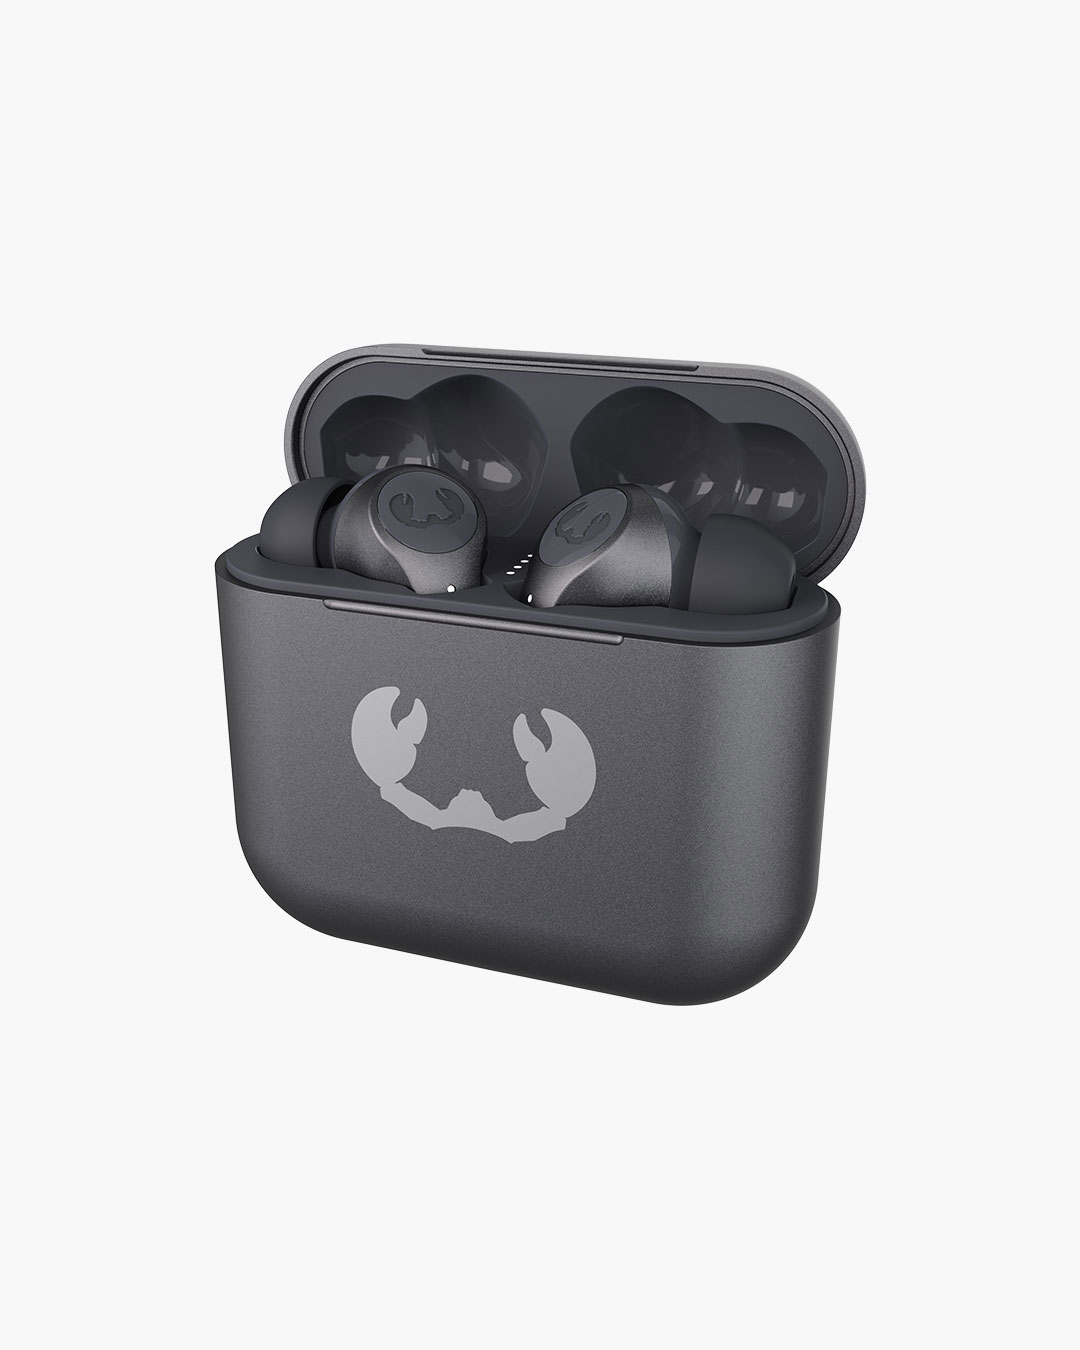 Fresh 'n Rebel - Twins 3 - True Wireless In-ear headphones with ear tip - Storm Grey